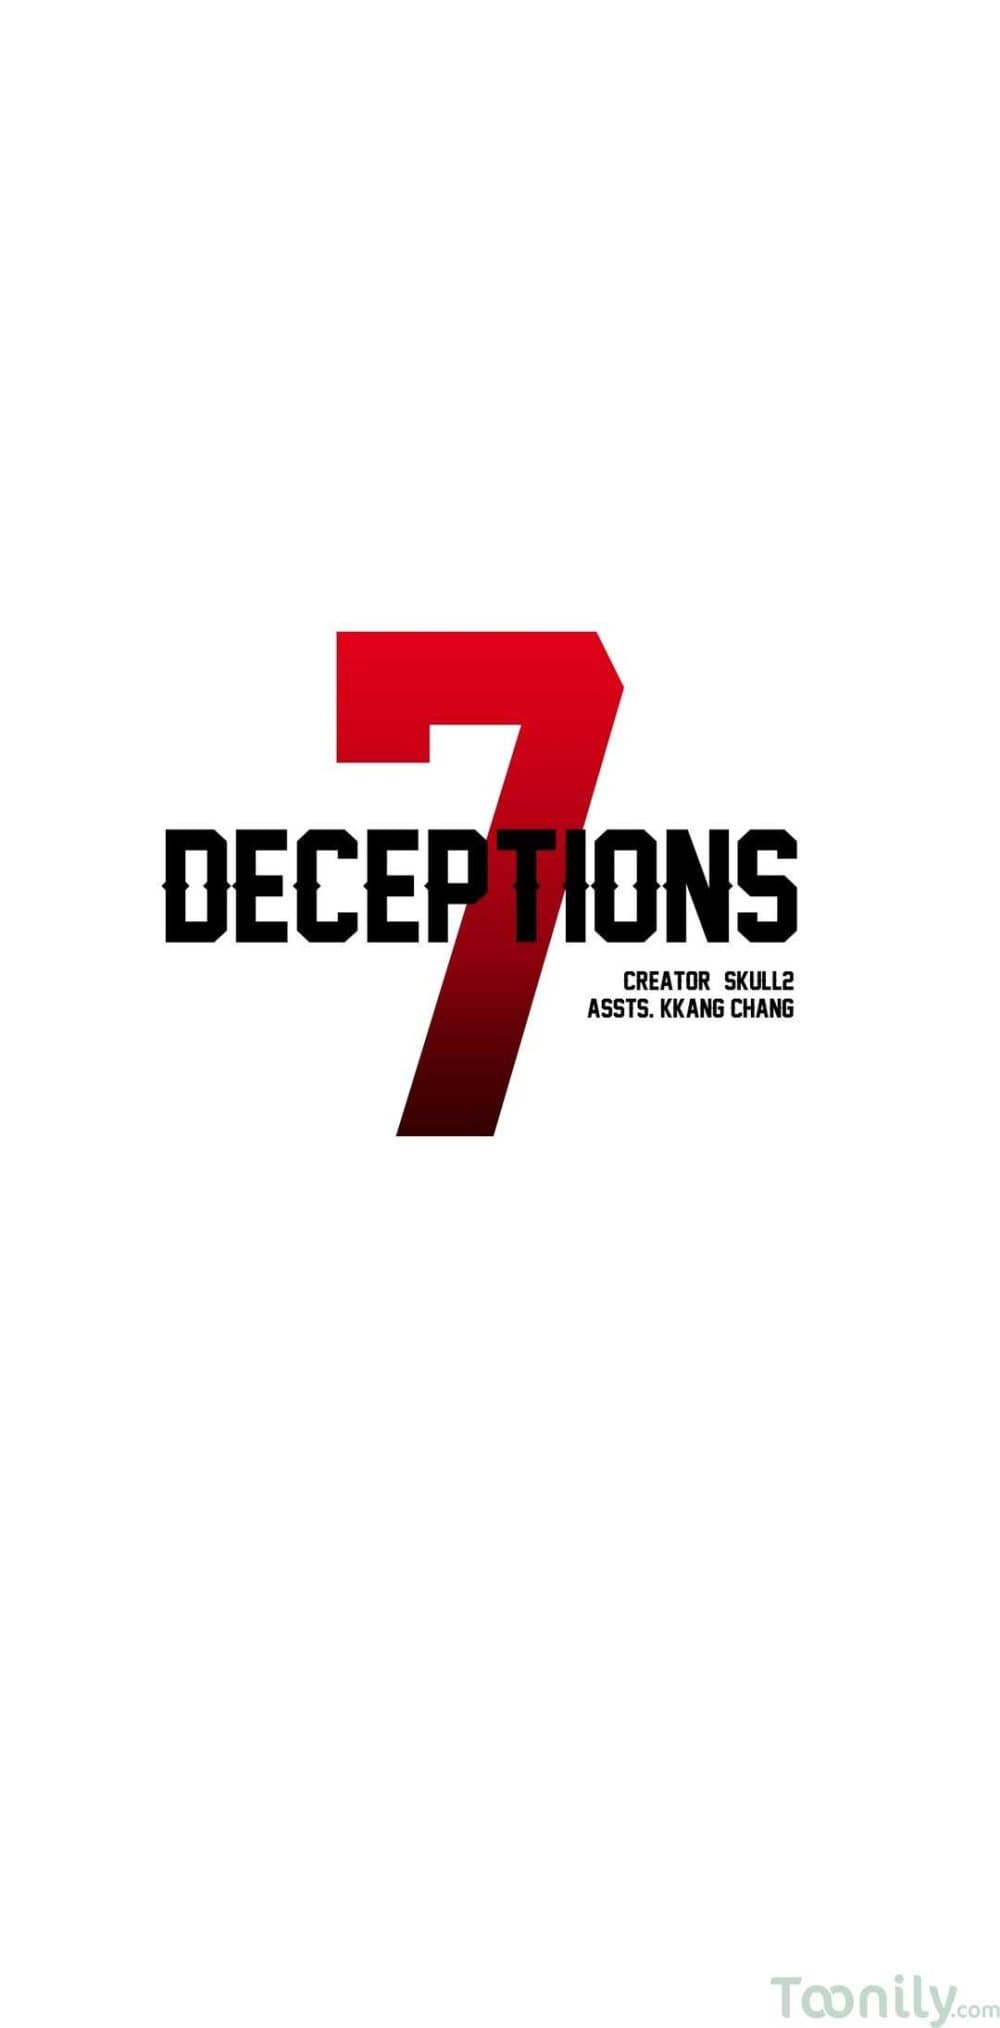 Deceptions 26 (19)